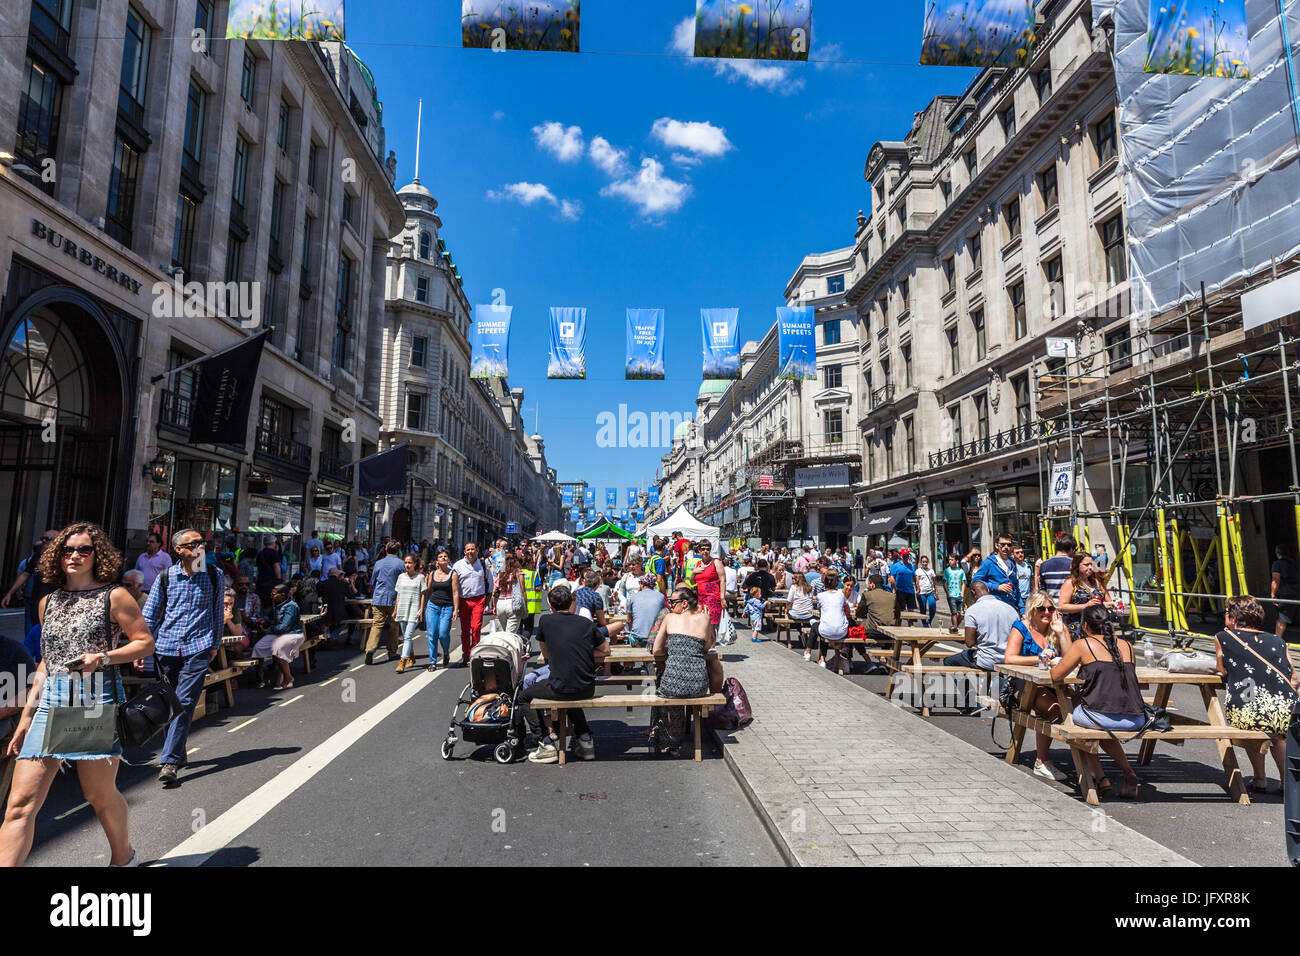 Festival de rues d'été sans circulation, Regent Street, Londres, Angleterre, Royaume-Uni. Banque D'Images